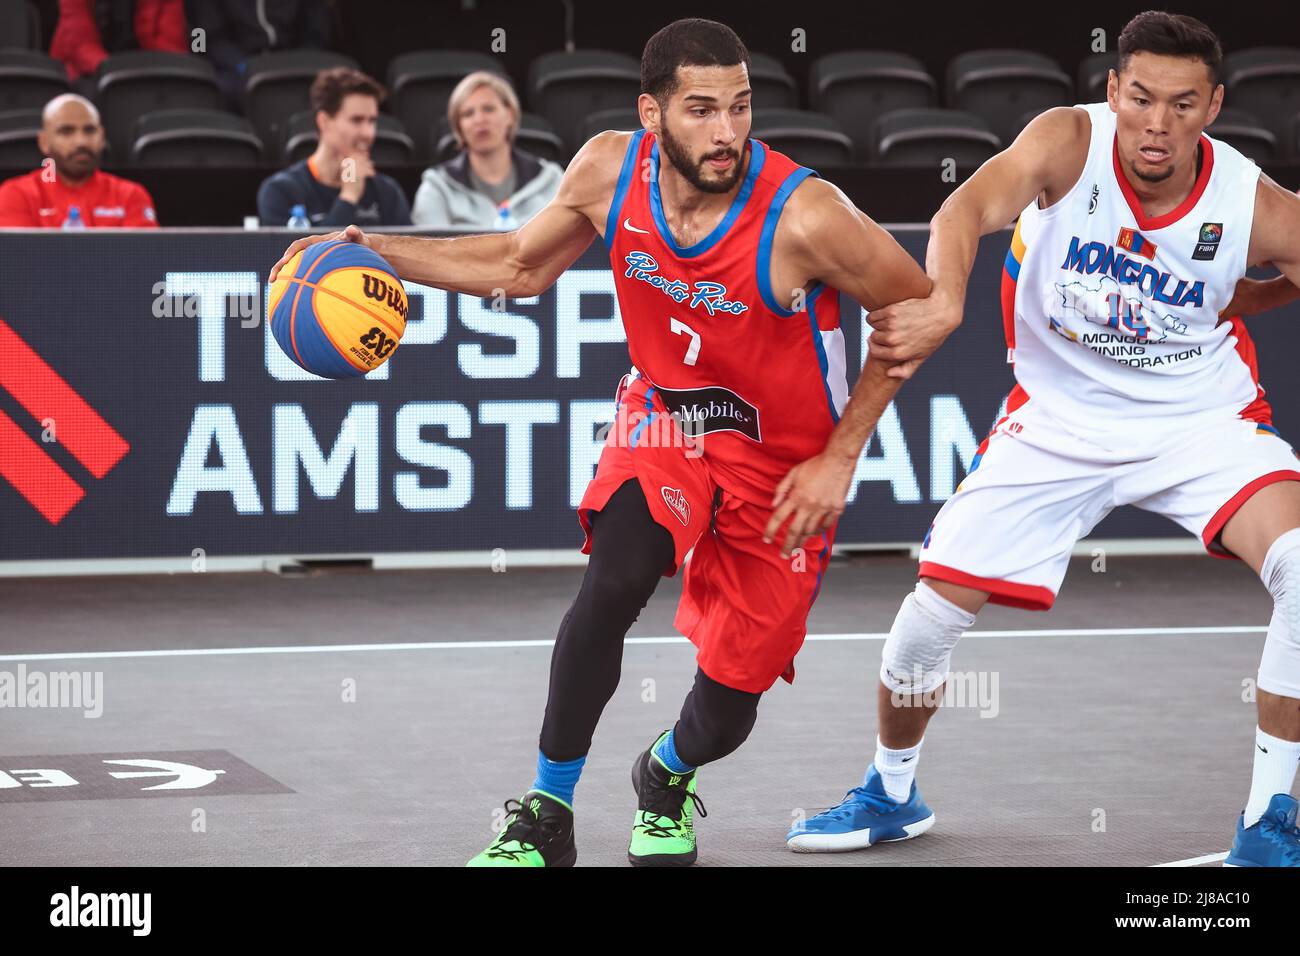 Amsterdam, pays-Bas, le 20 juin 2019: Josue Erazo, joueur de basket-ball portoricain, en action pendant la coupe du monde 3x3 de basket-ball Banque D'Images